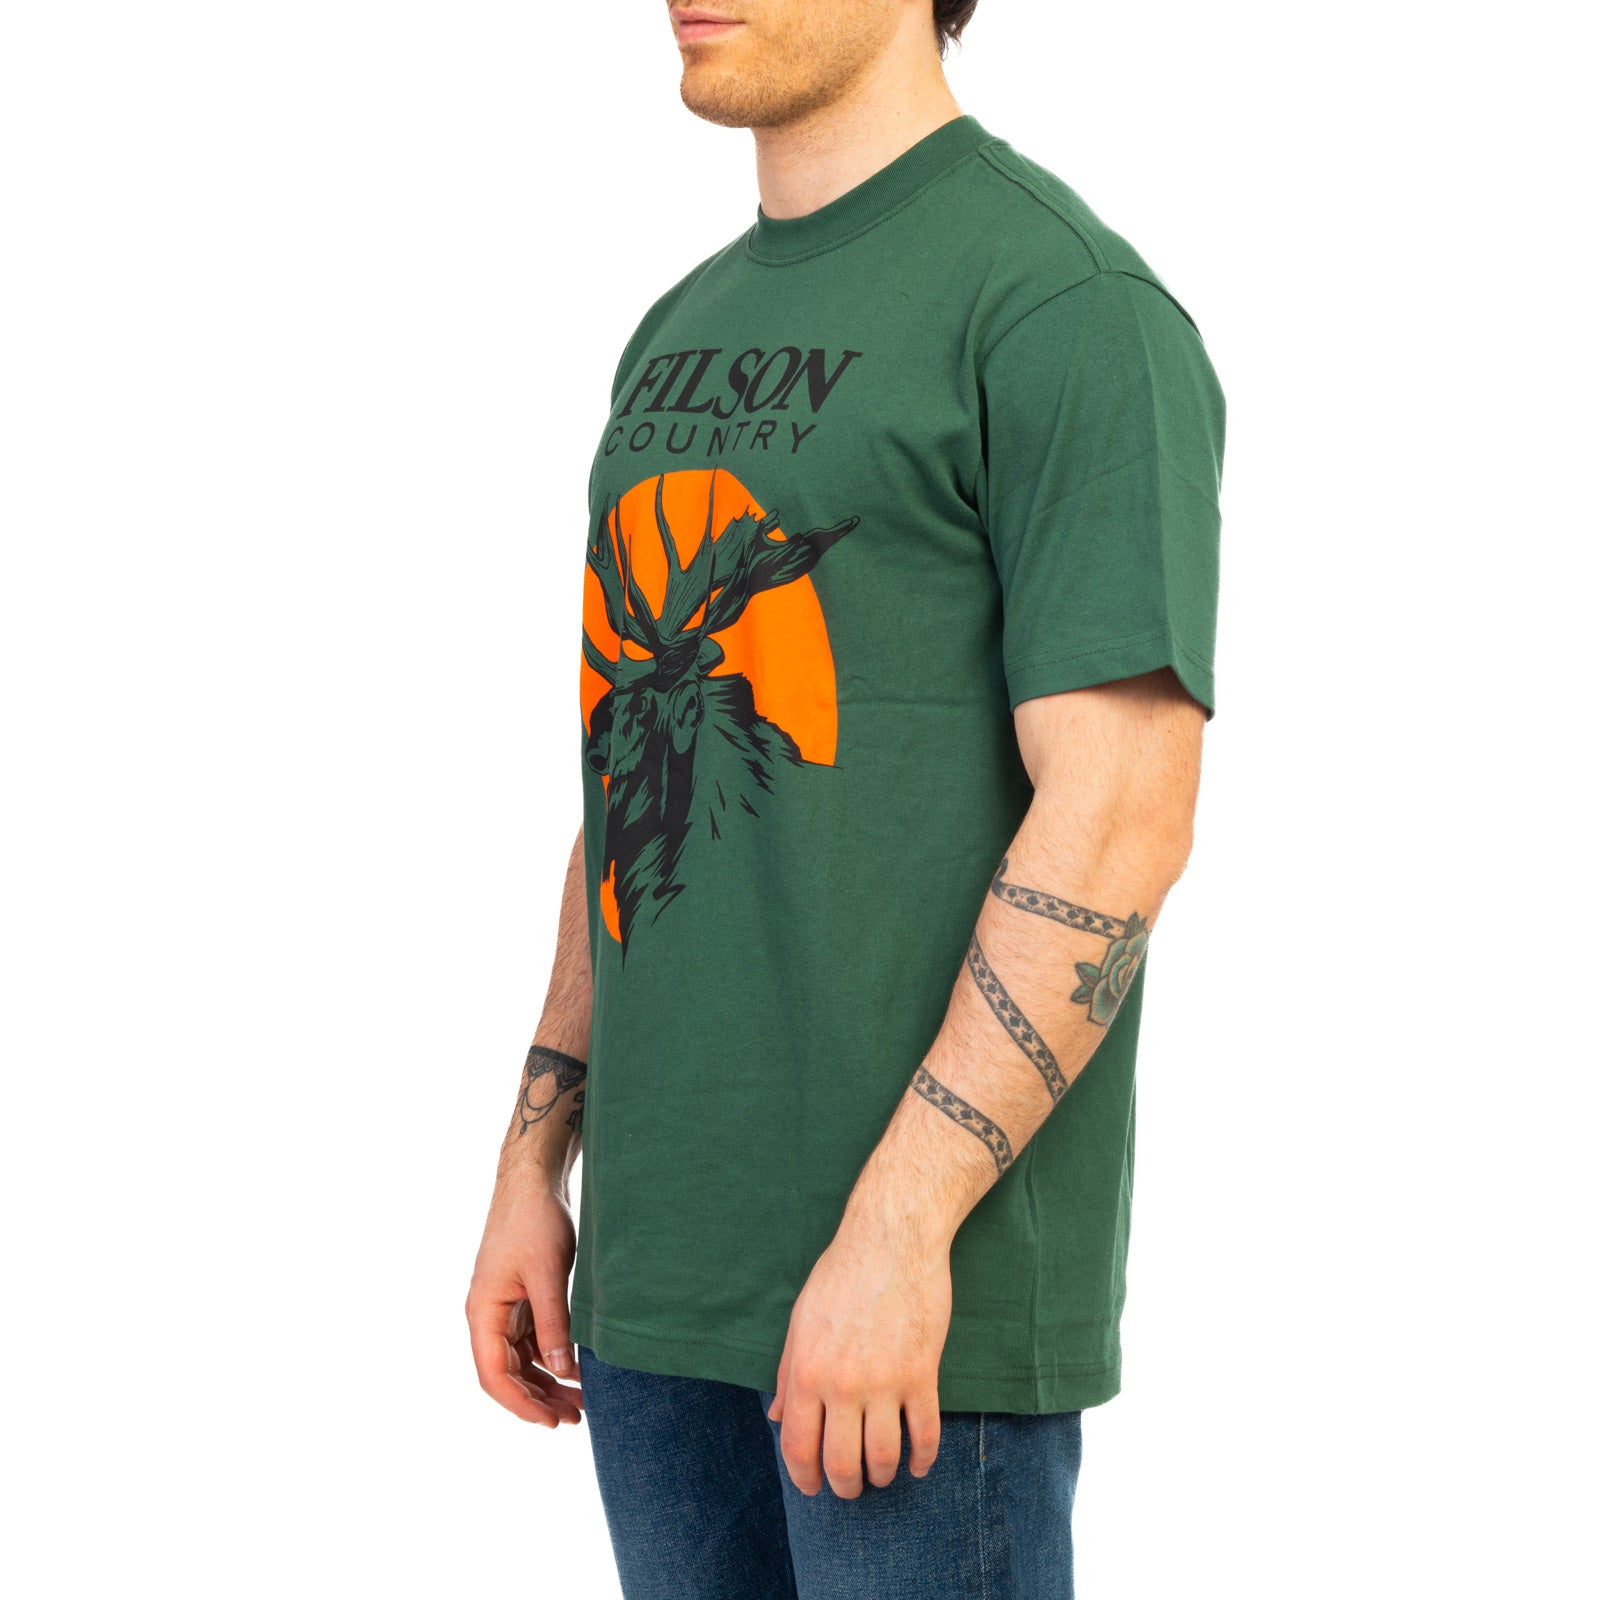 T-shirt FILSON
Verde